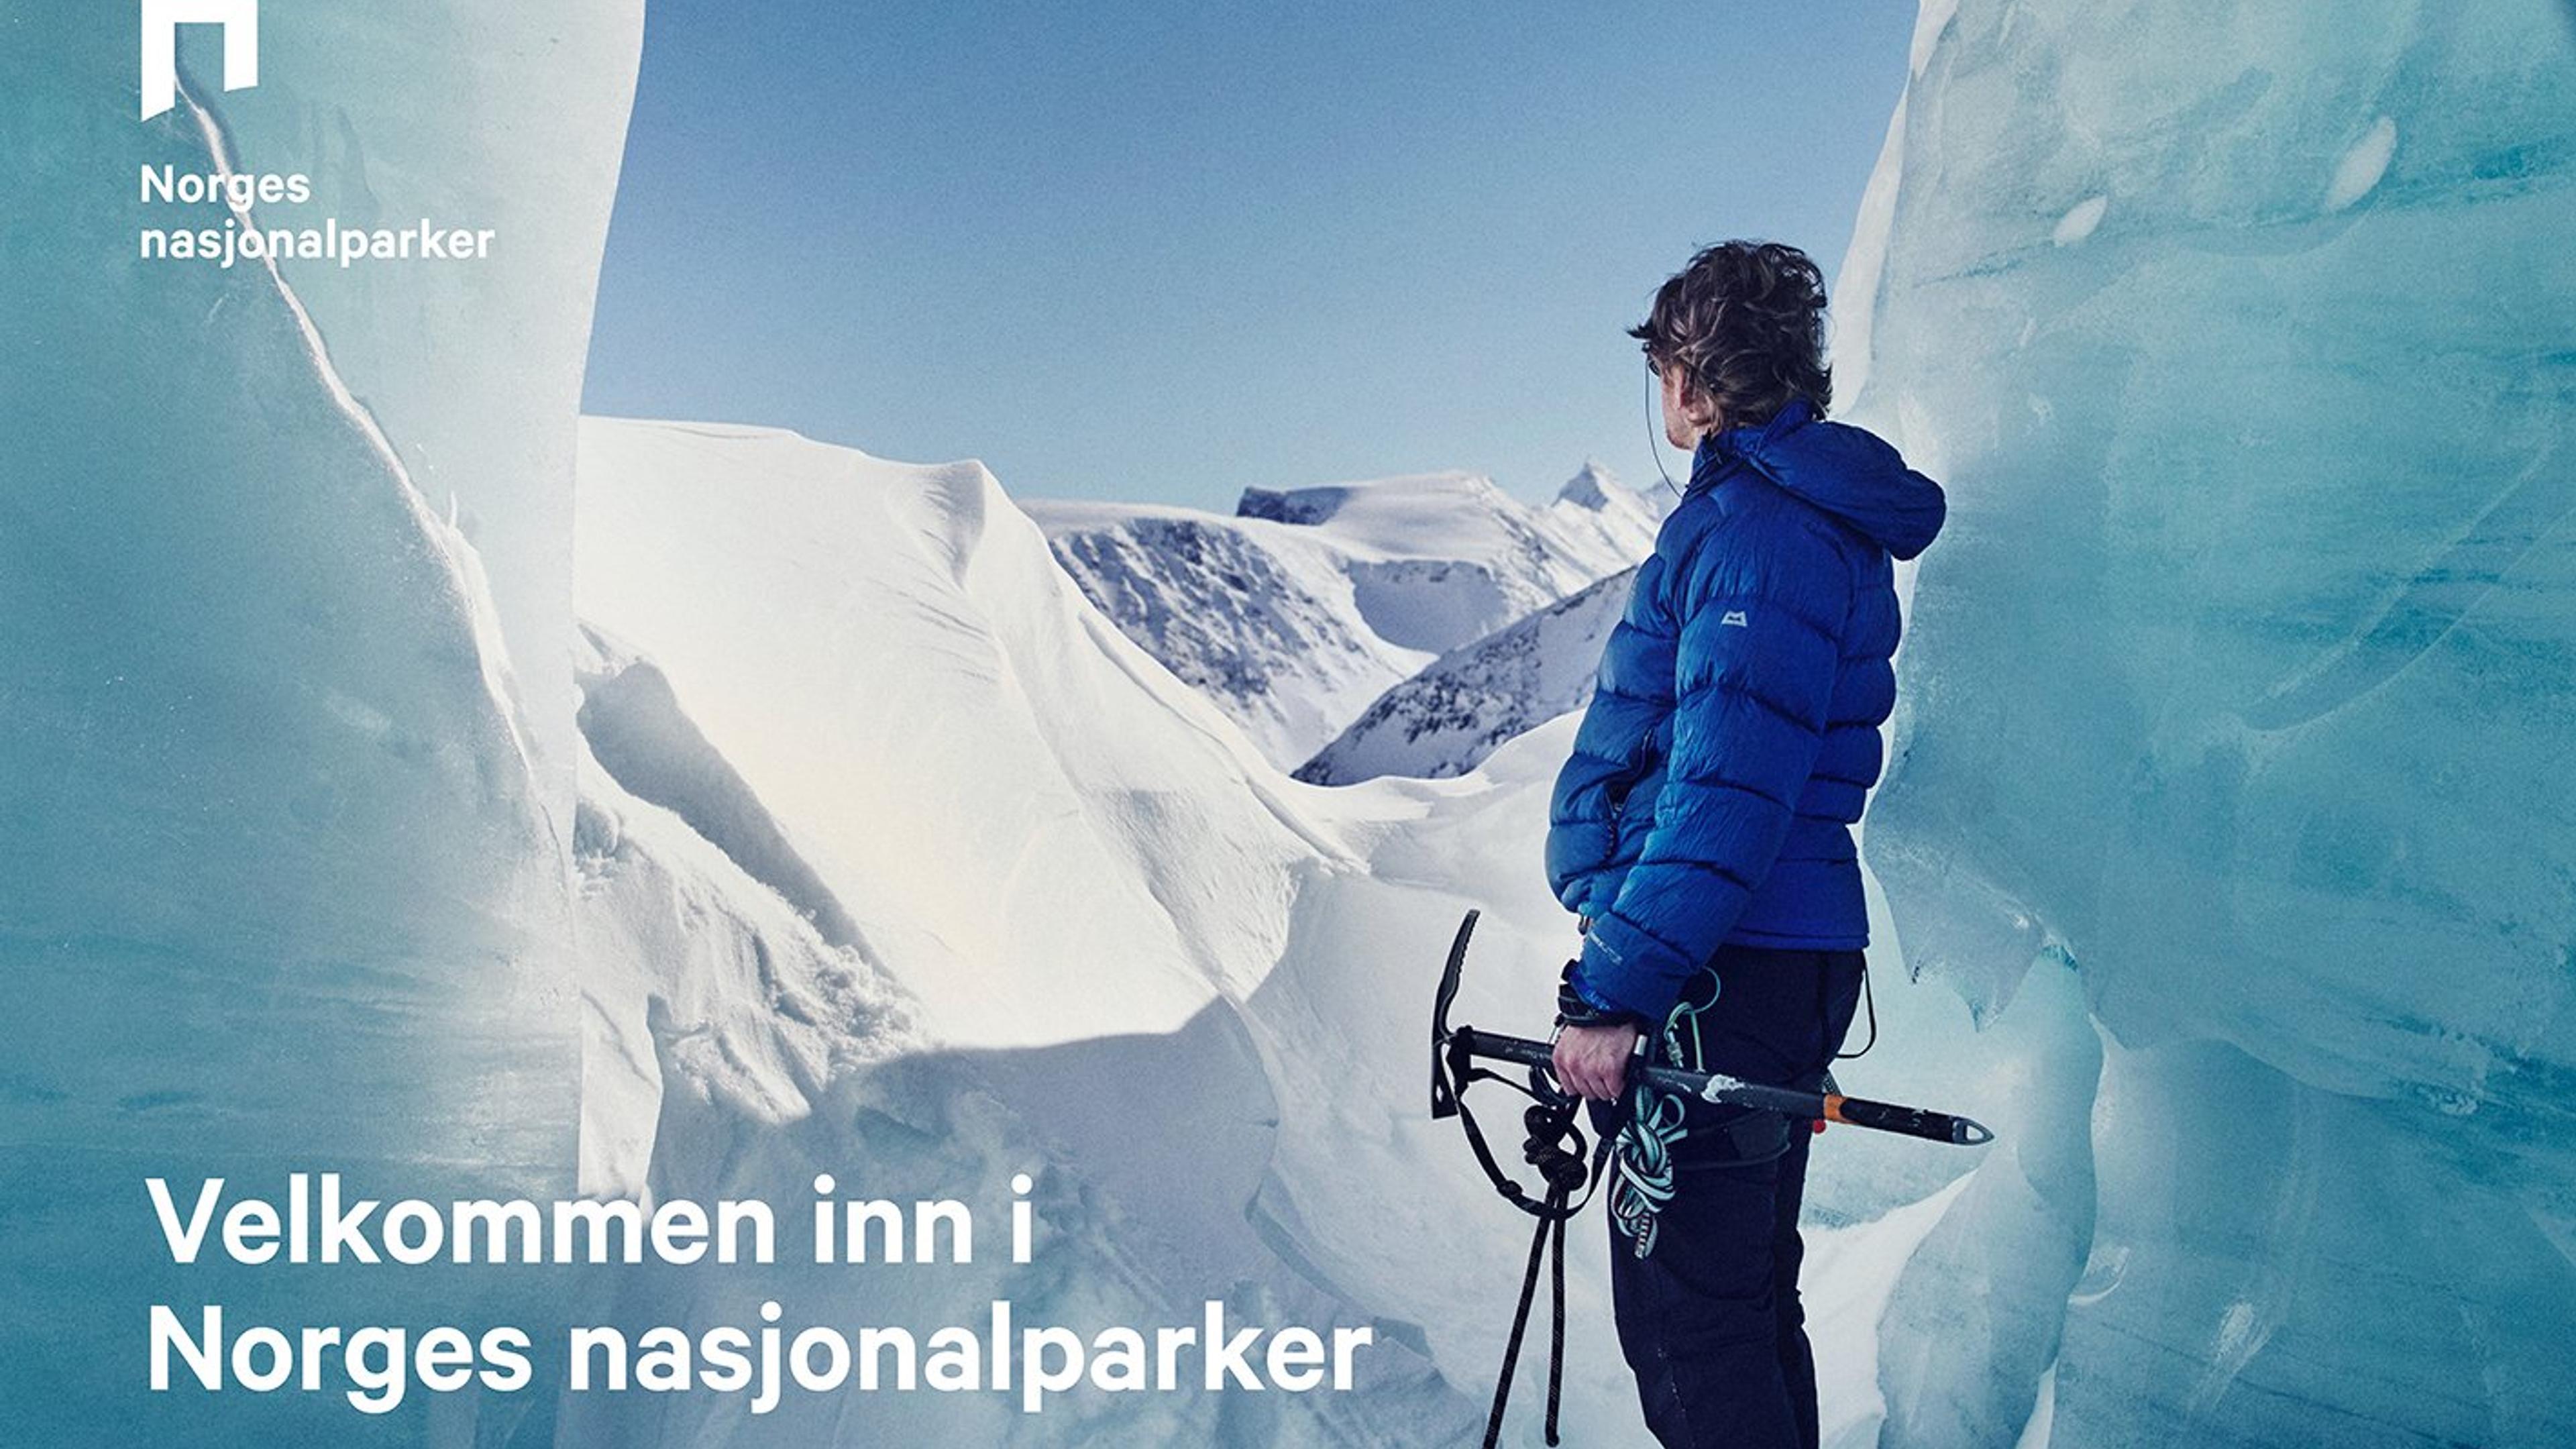 Person som isklatrer. På bildet står det "Norges nasjonalparker. Velkommen inn i Norges nasjonalparker."